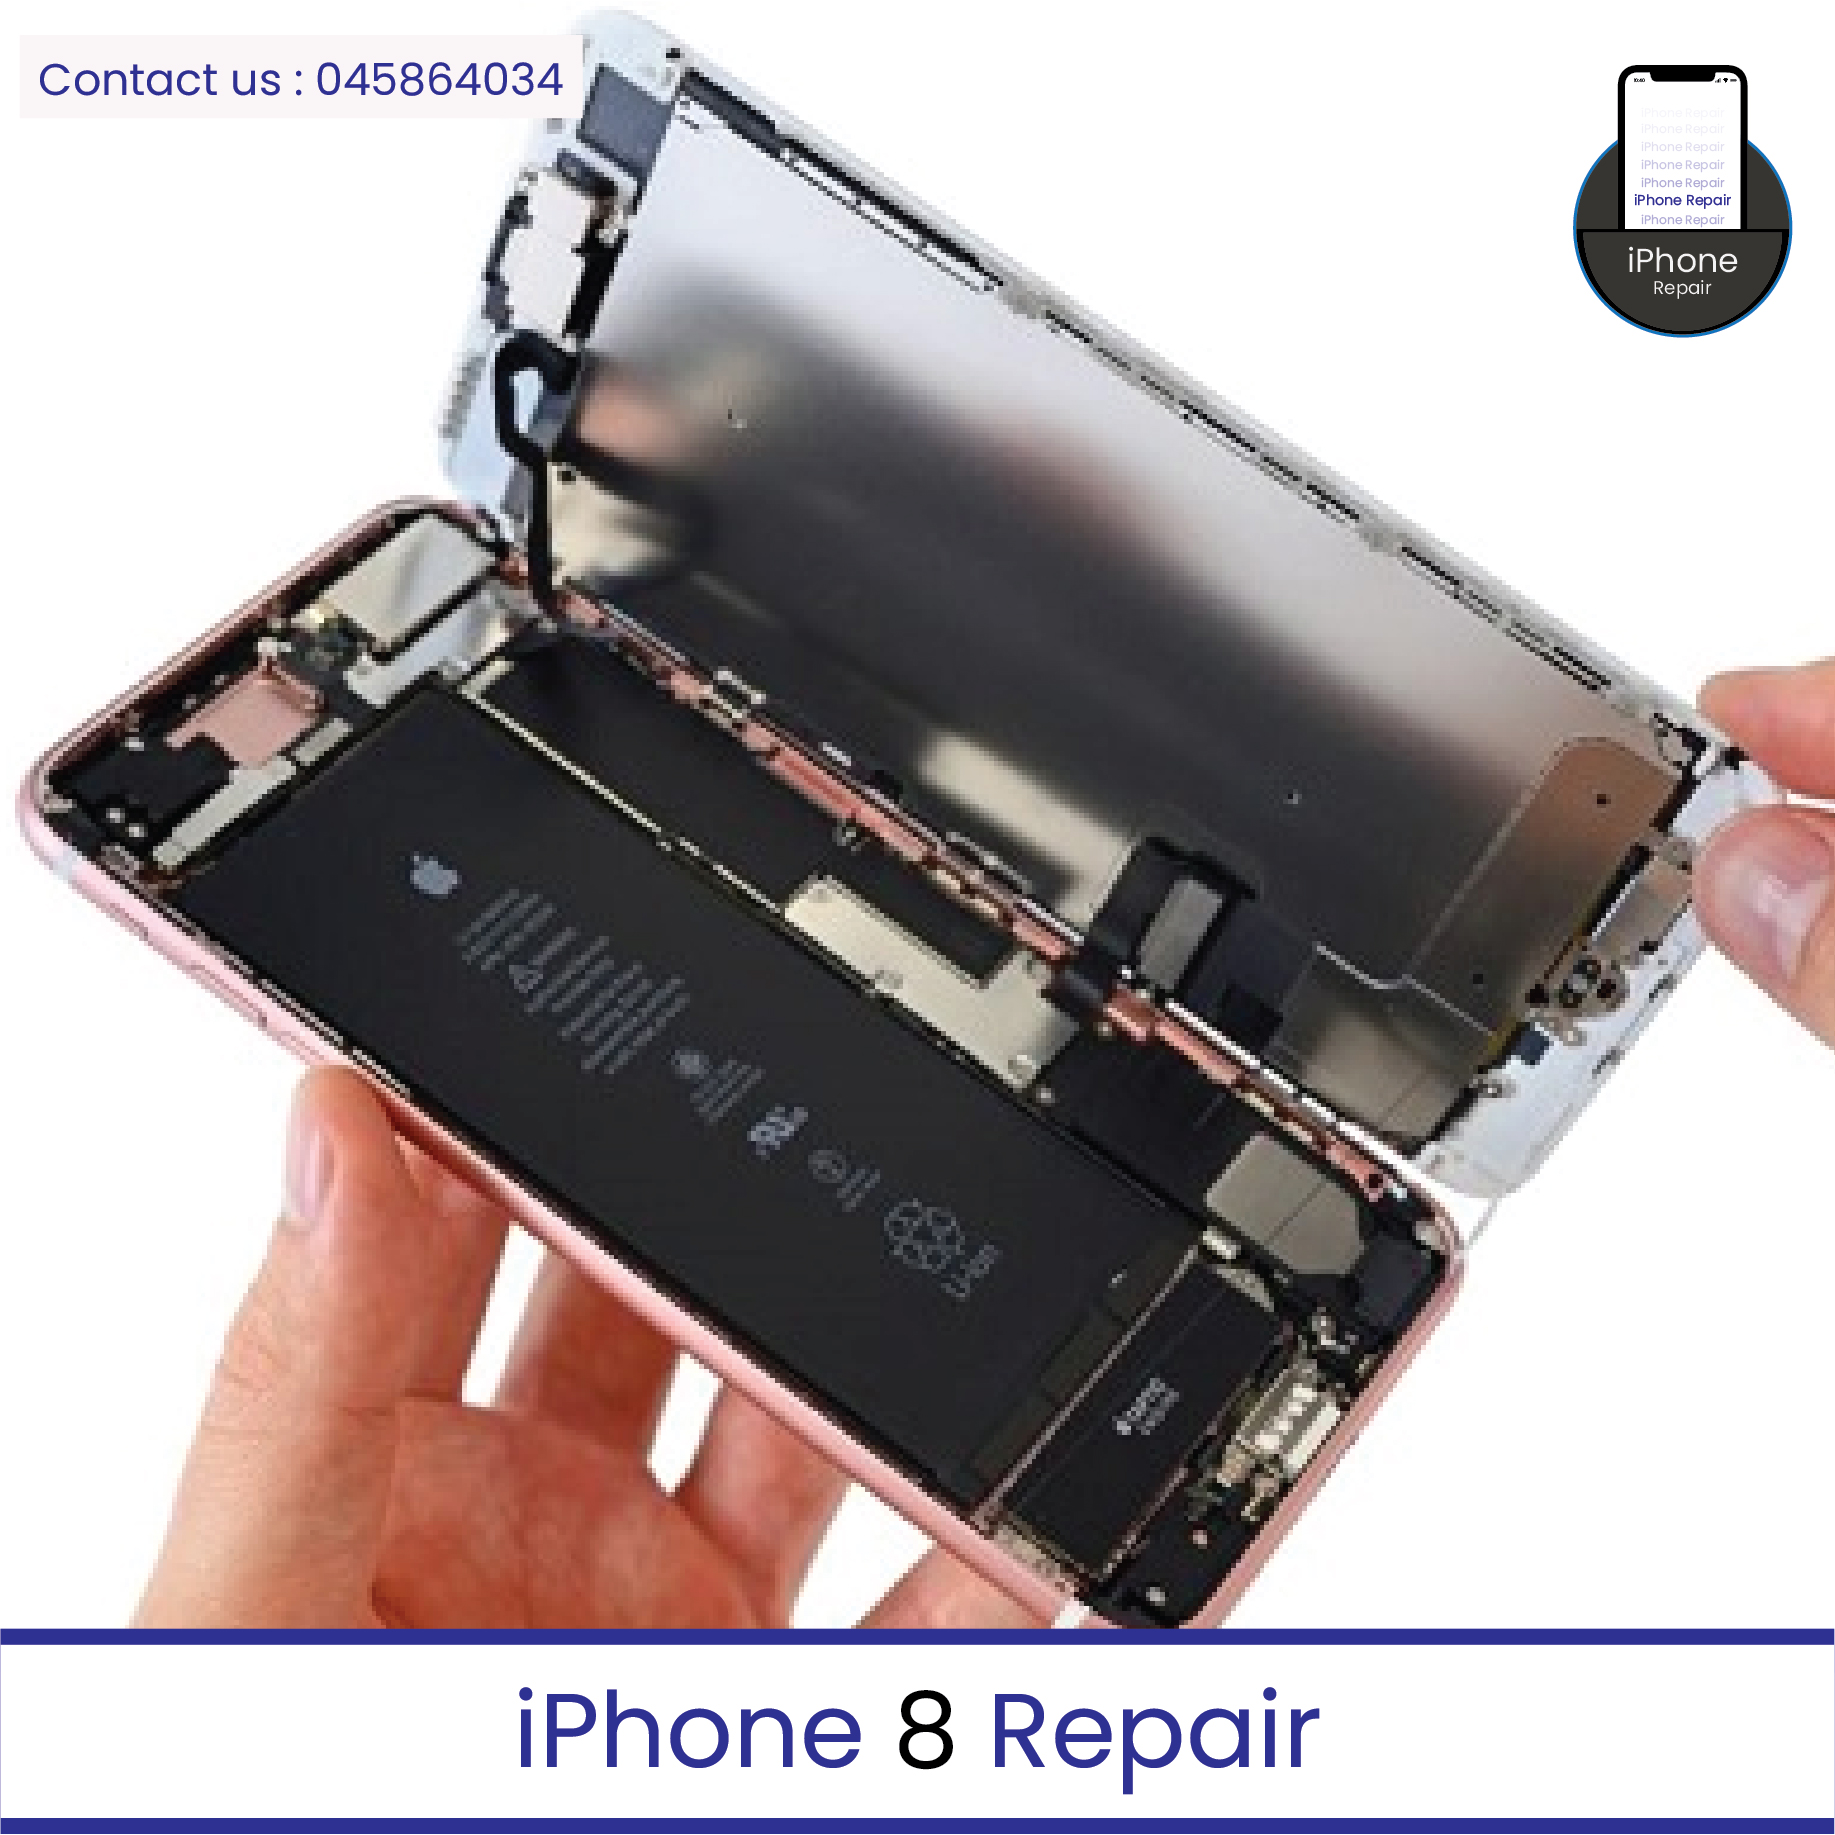 iphone 8 repair